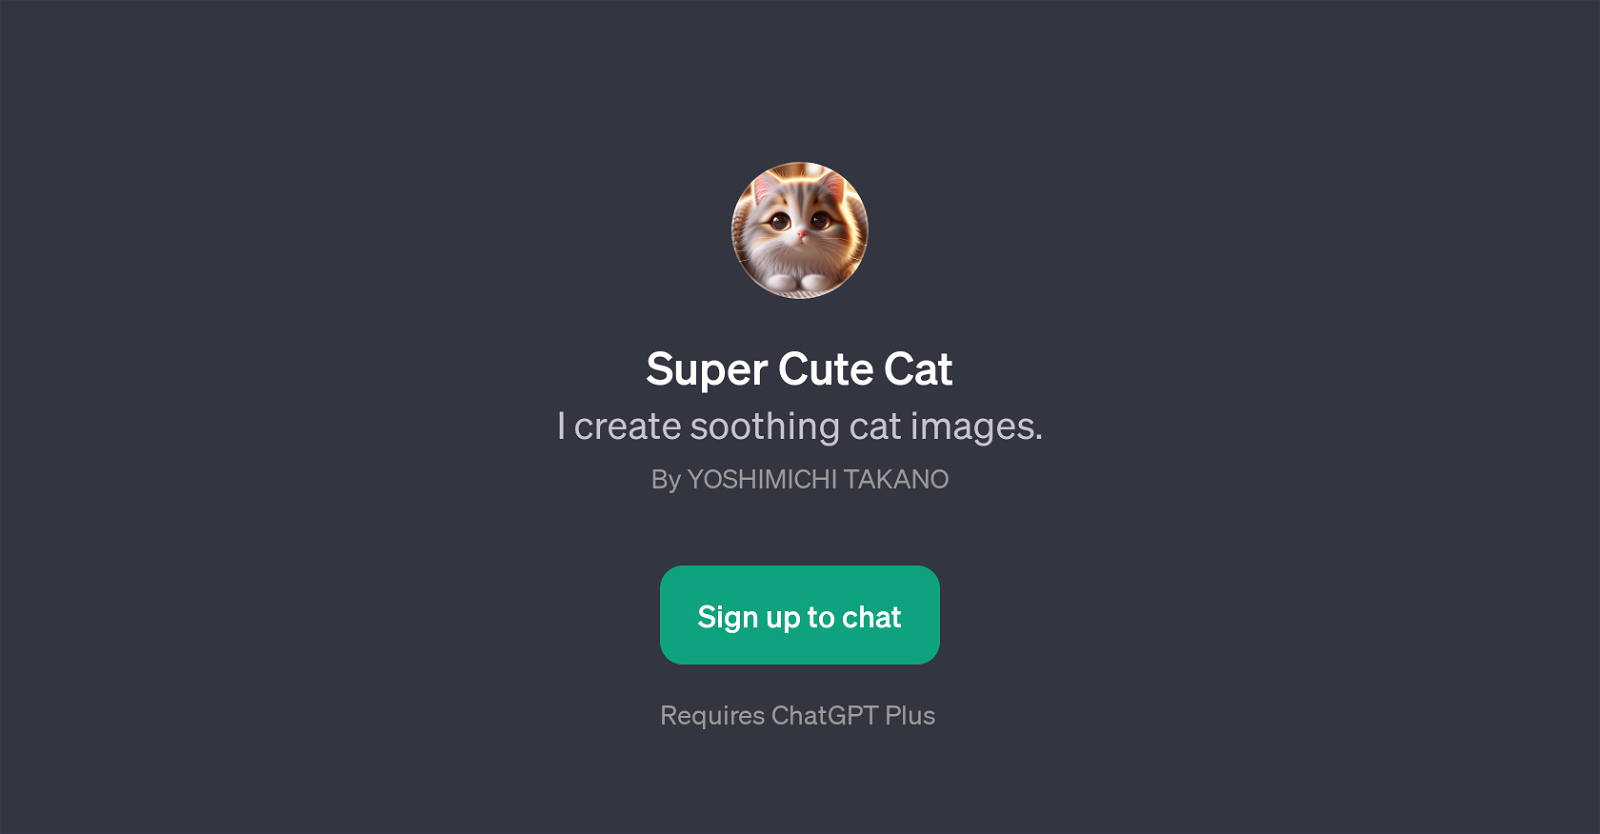 Super Cute Cat website